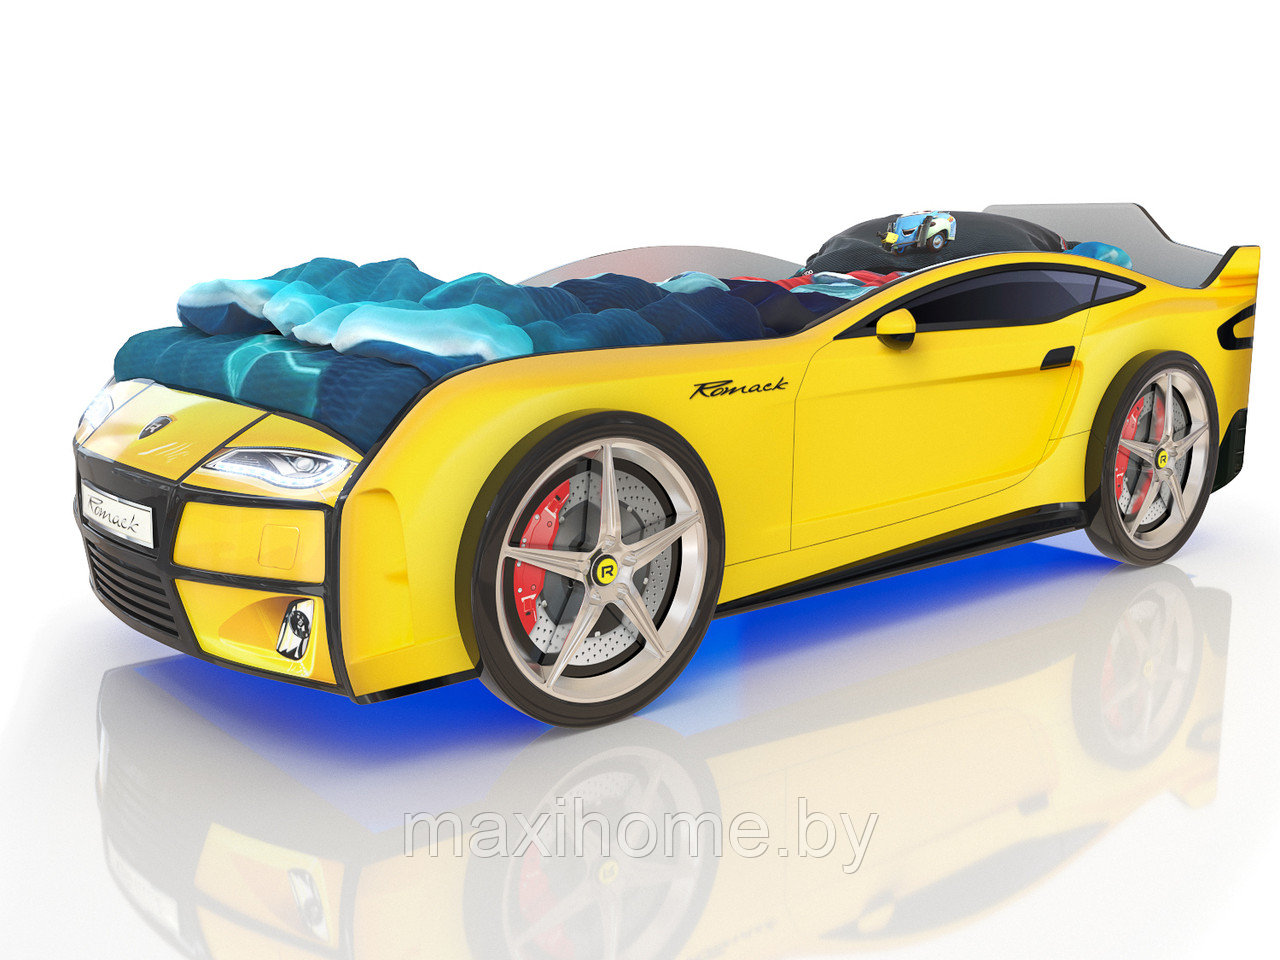 Кровать-машина Ferrari yellow (желтый)